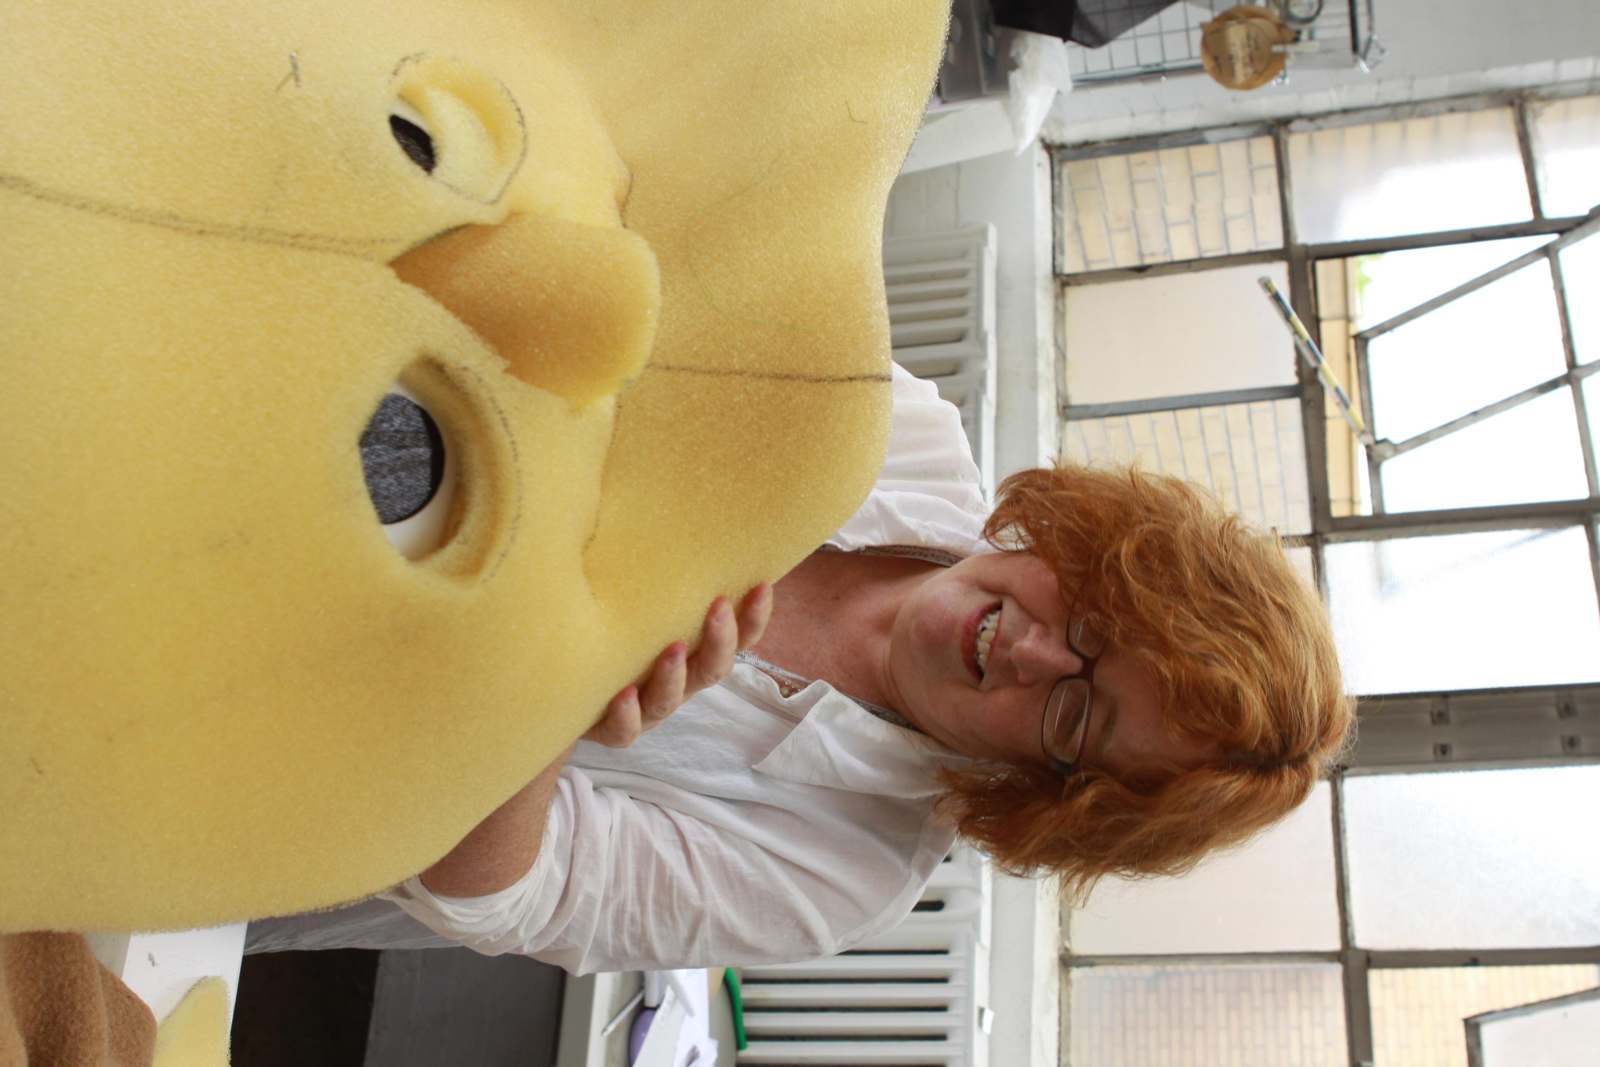 a woman holding a yellow stuffed animal